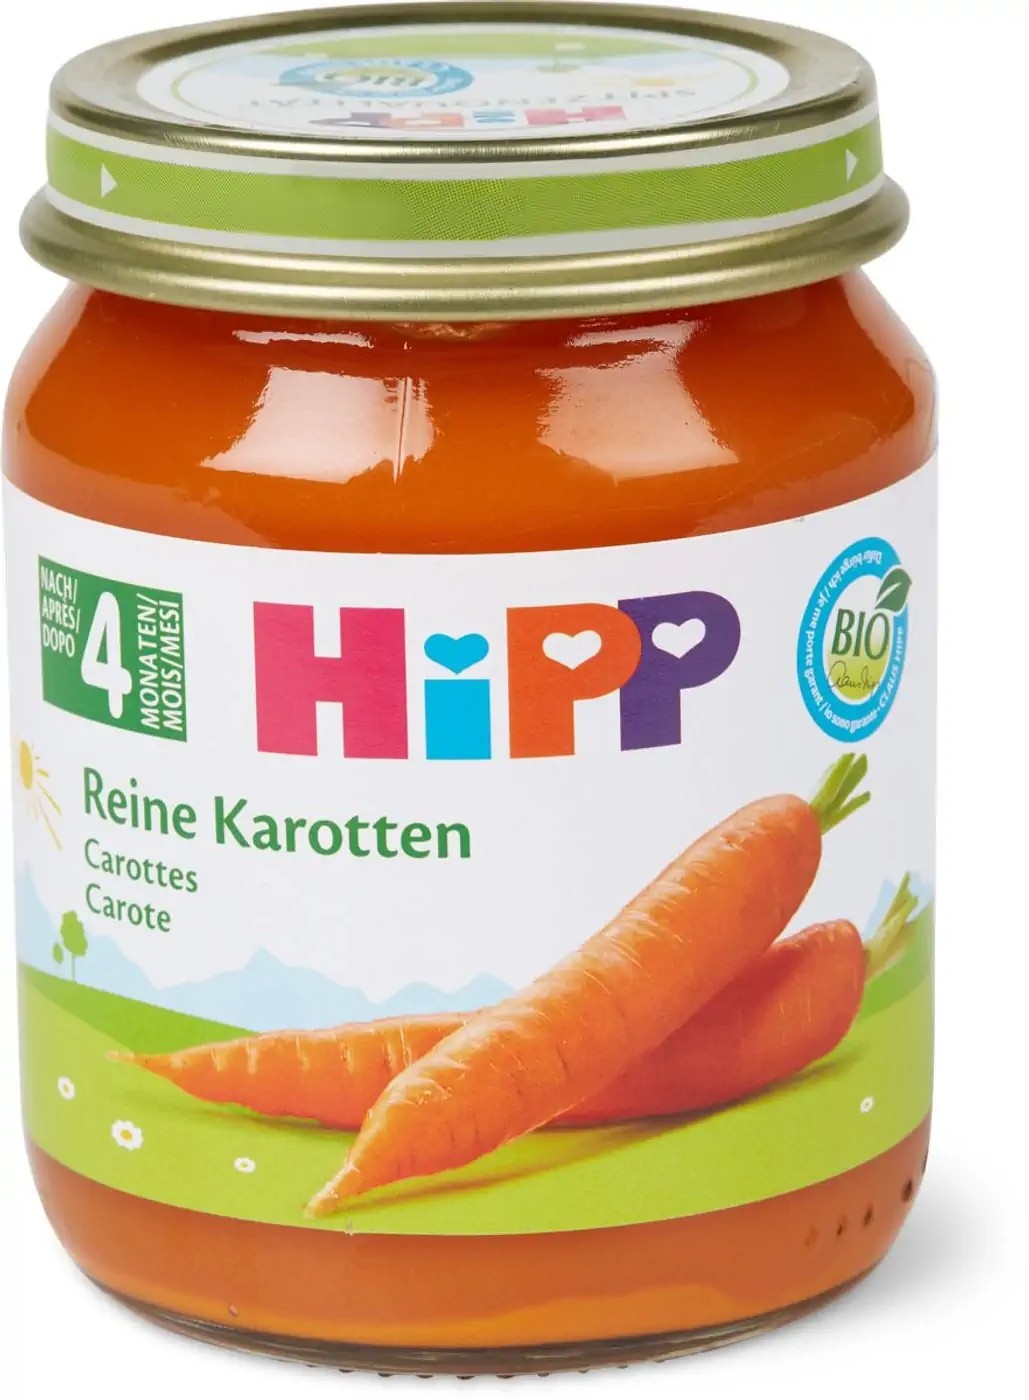 Image of Hipp Reine Karotten Glas (125g)